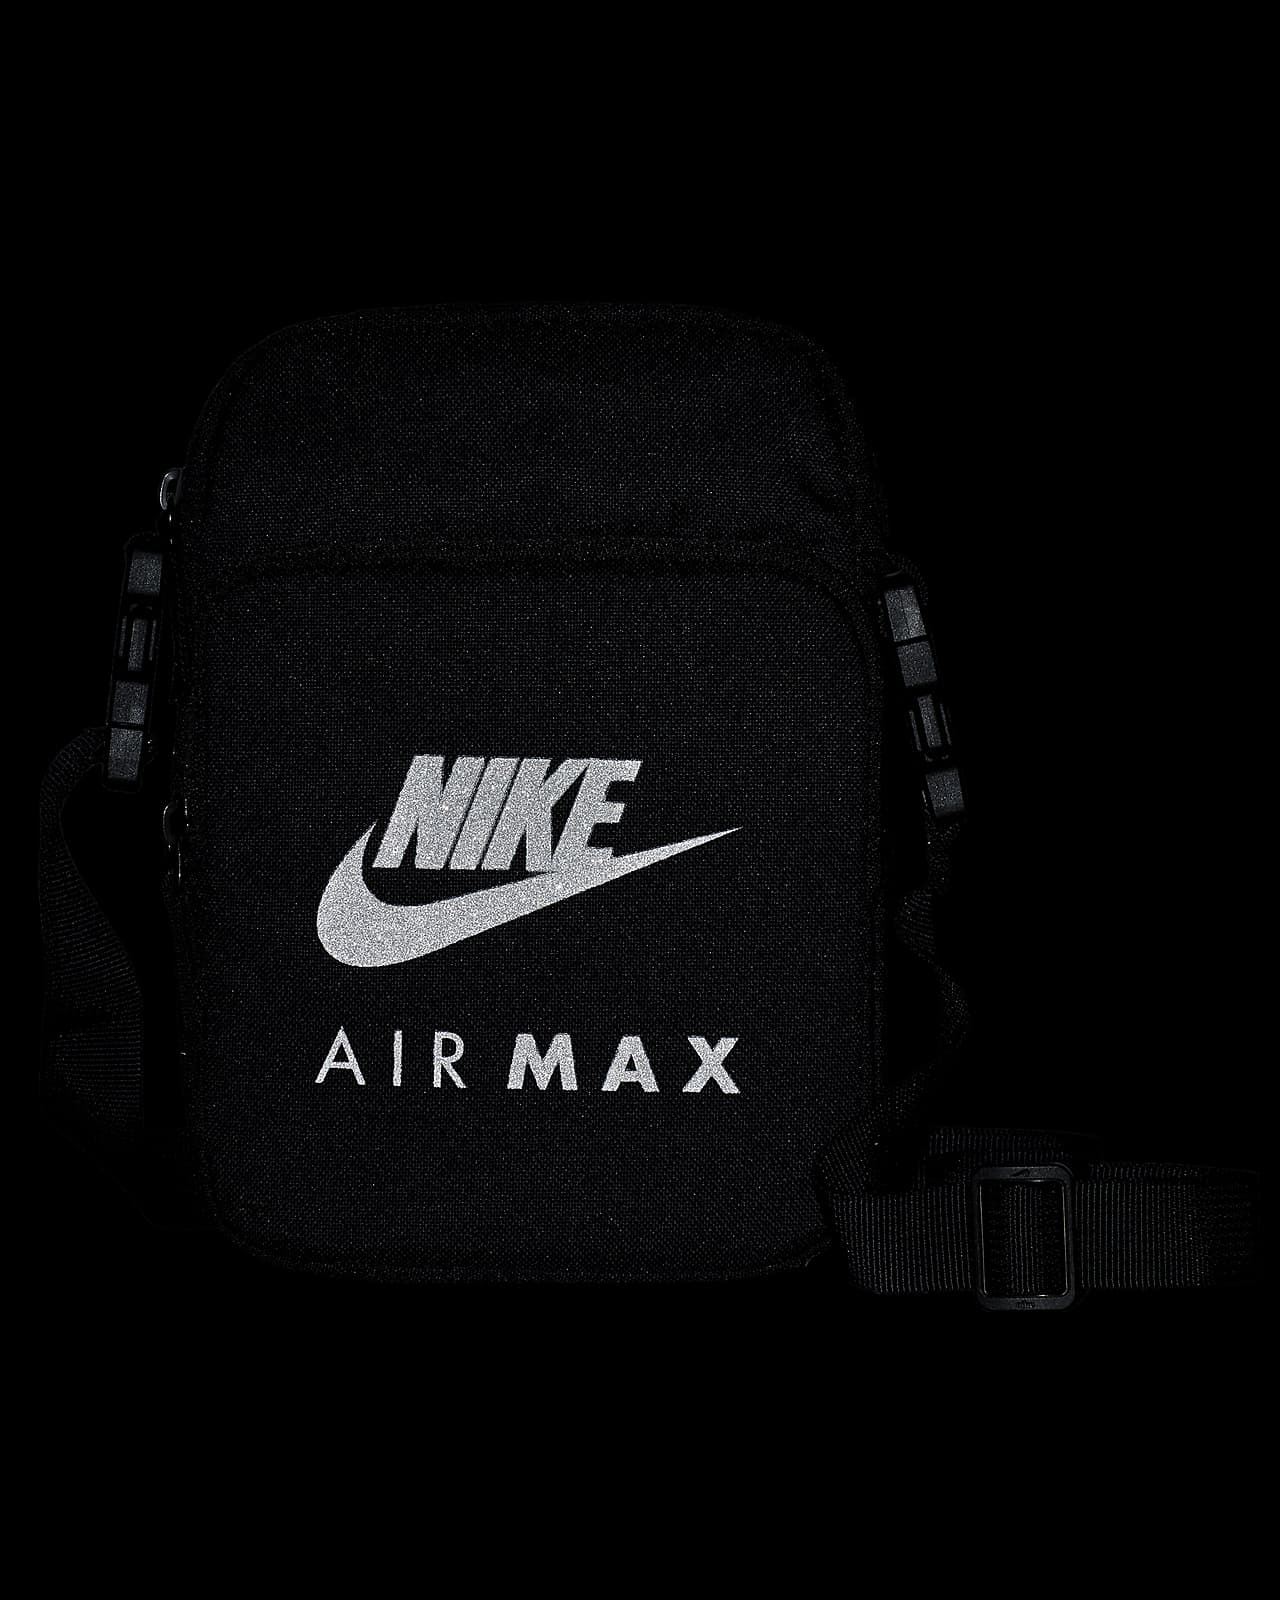 nike air max 2.0 small items crossbody bag